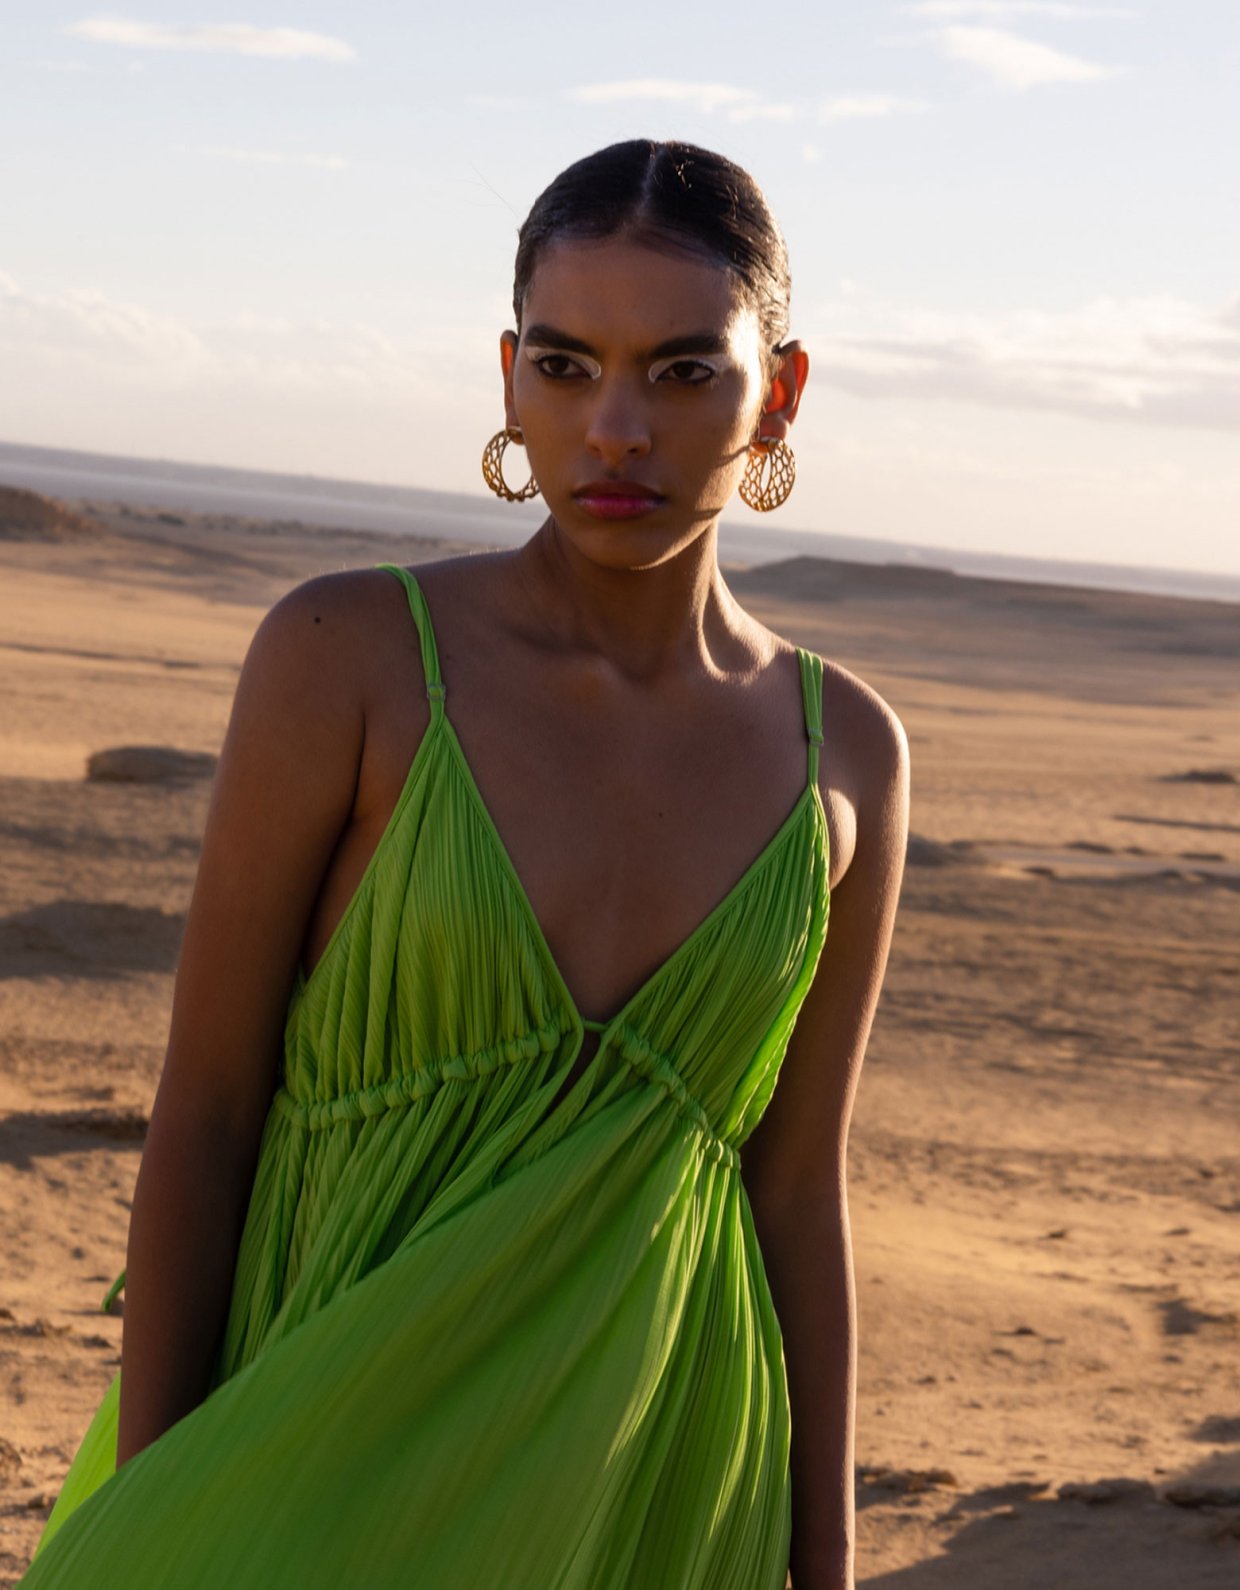 Mallory the label Musa green dress